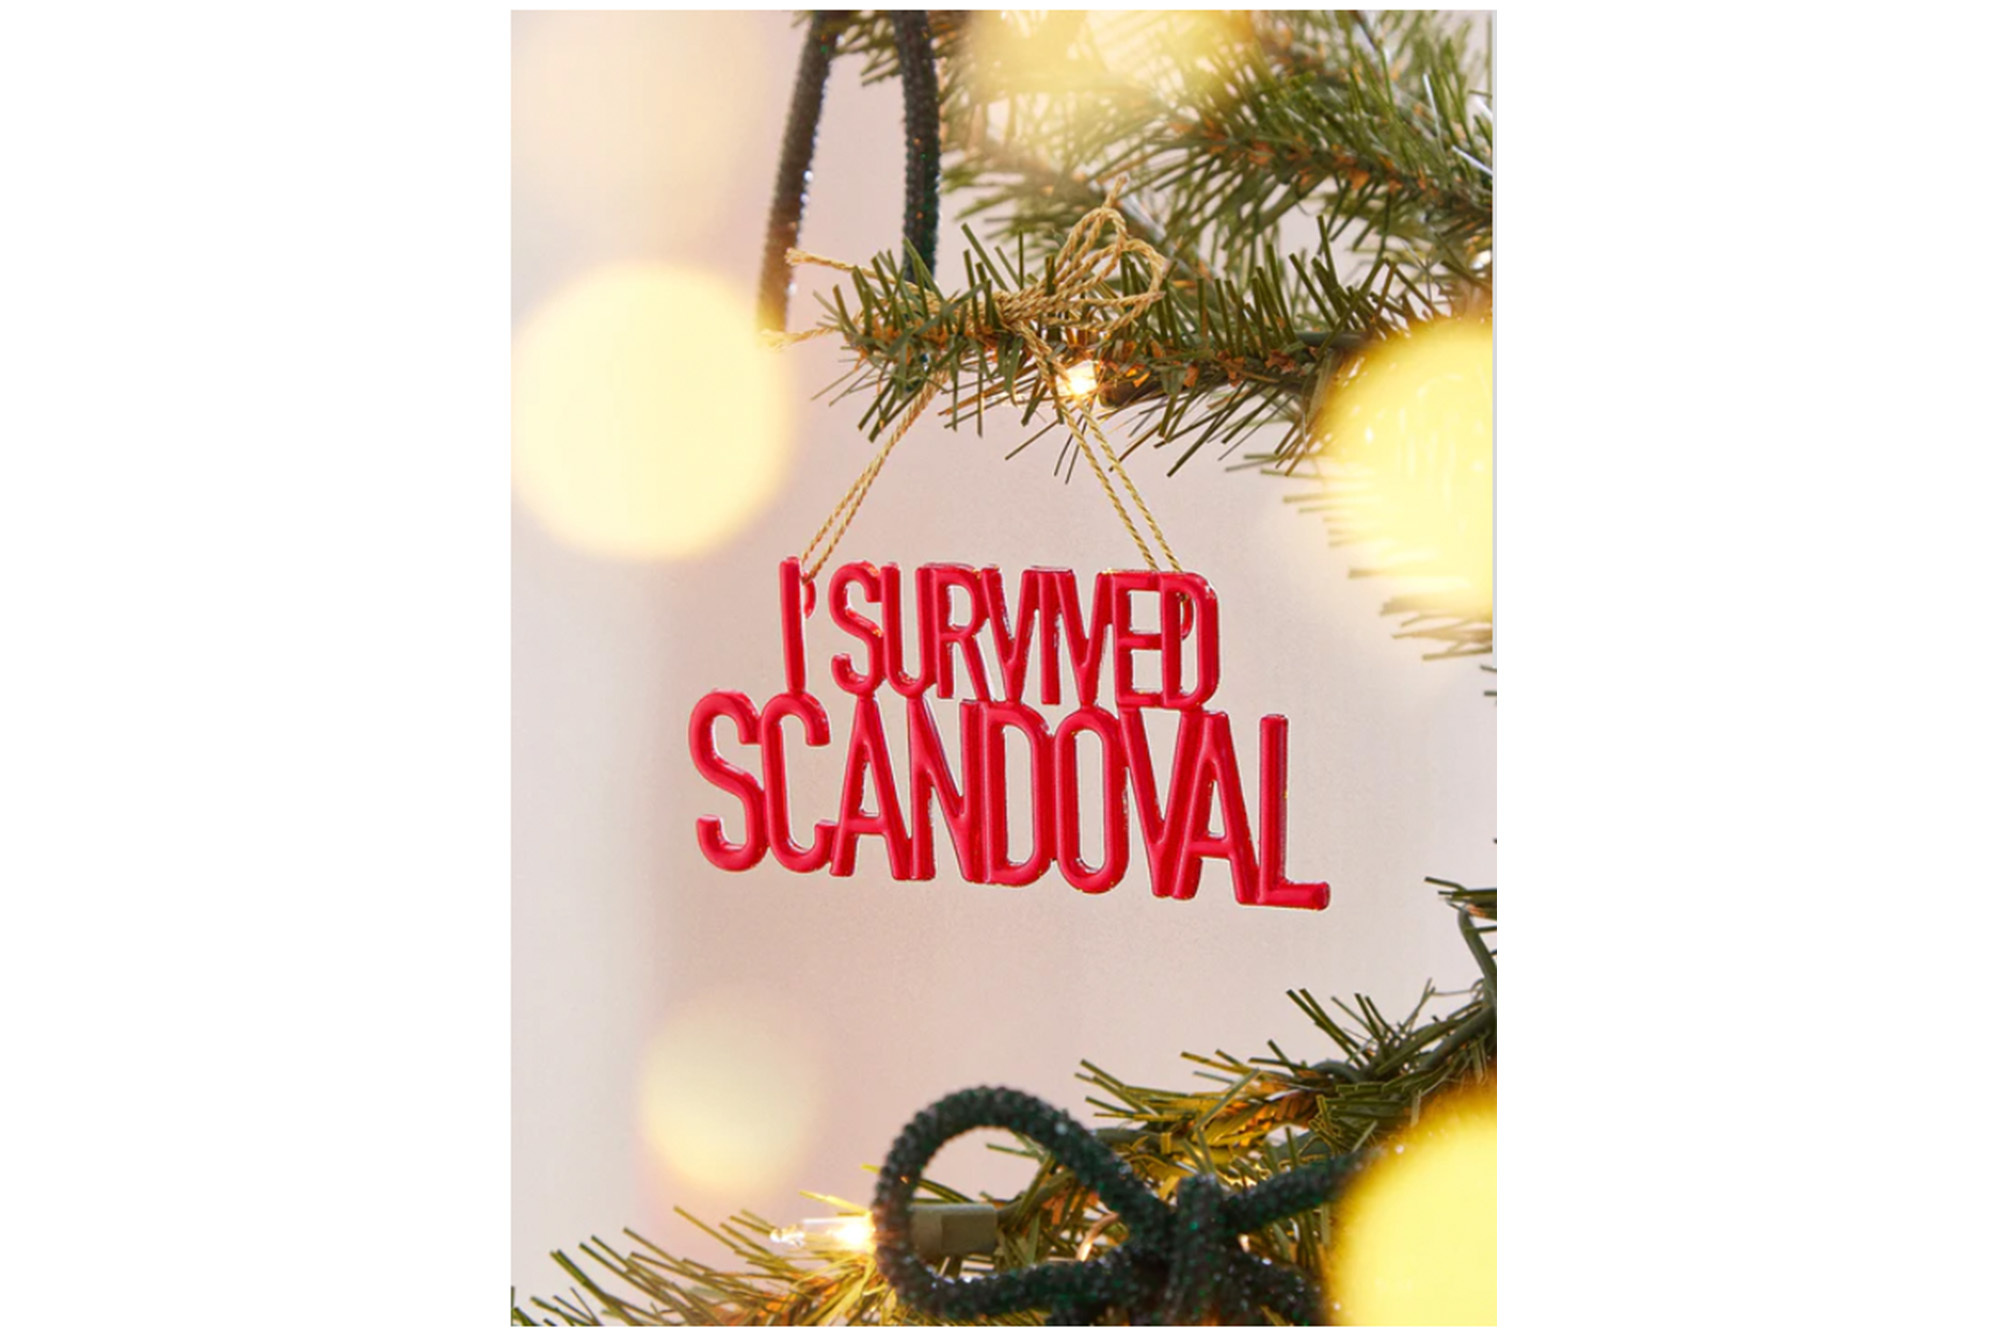 Ein Ornament, das sagt "Ich habe Scandoval überlebt" in rot